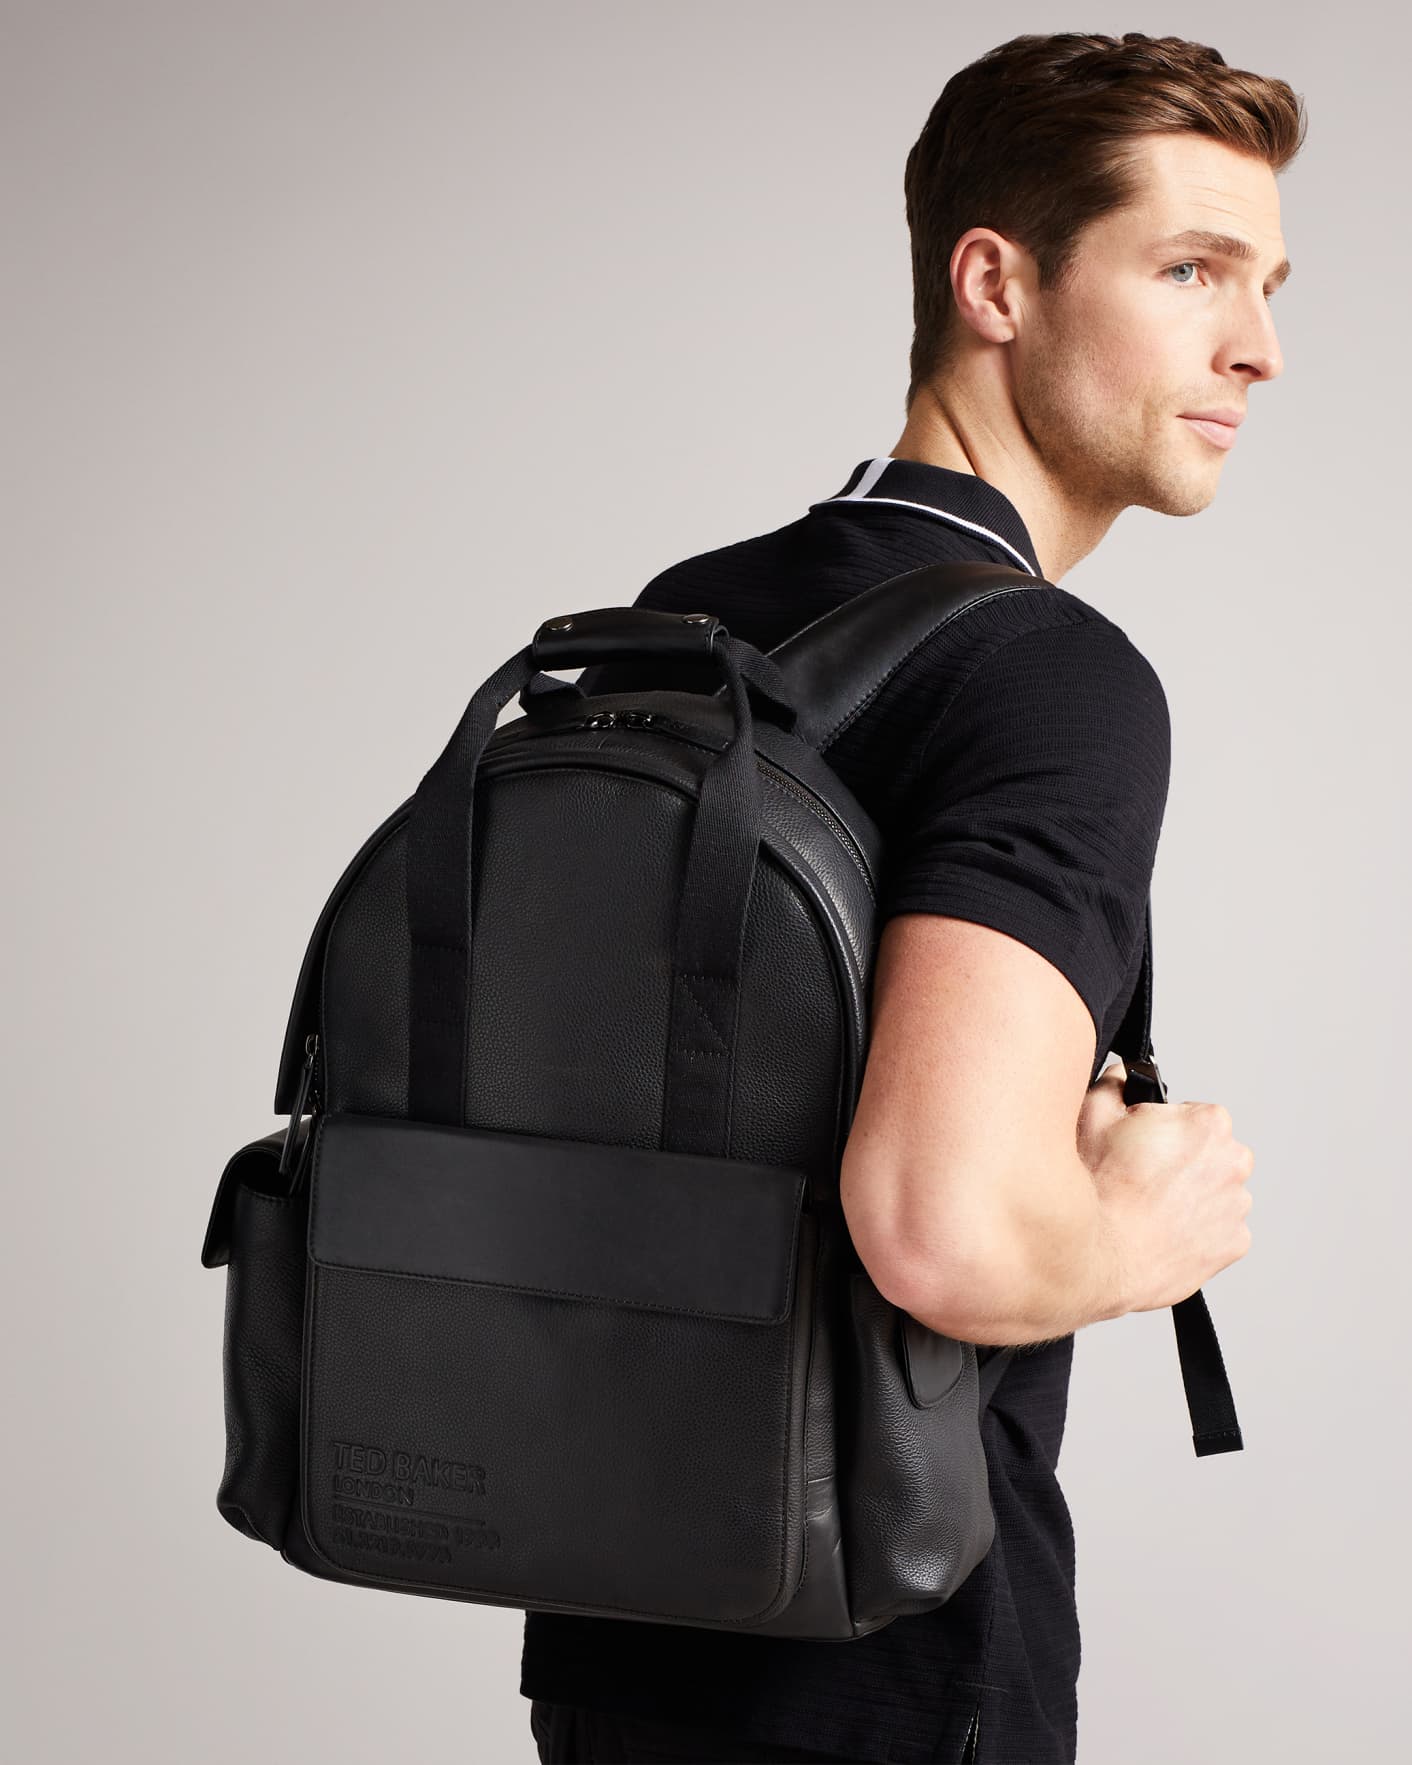 Black Branded Leather Backpack Bag Ted Baker